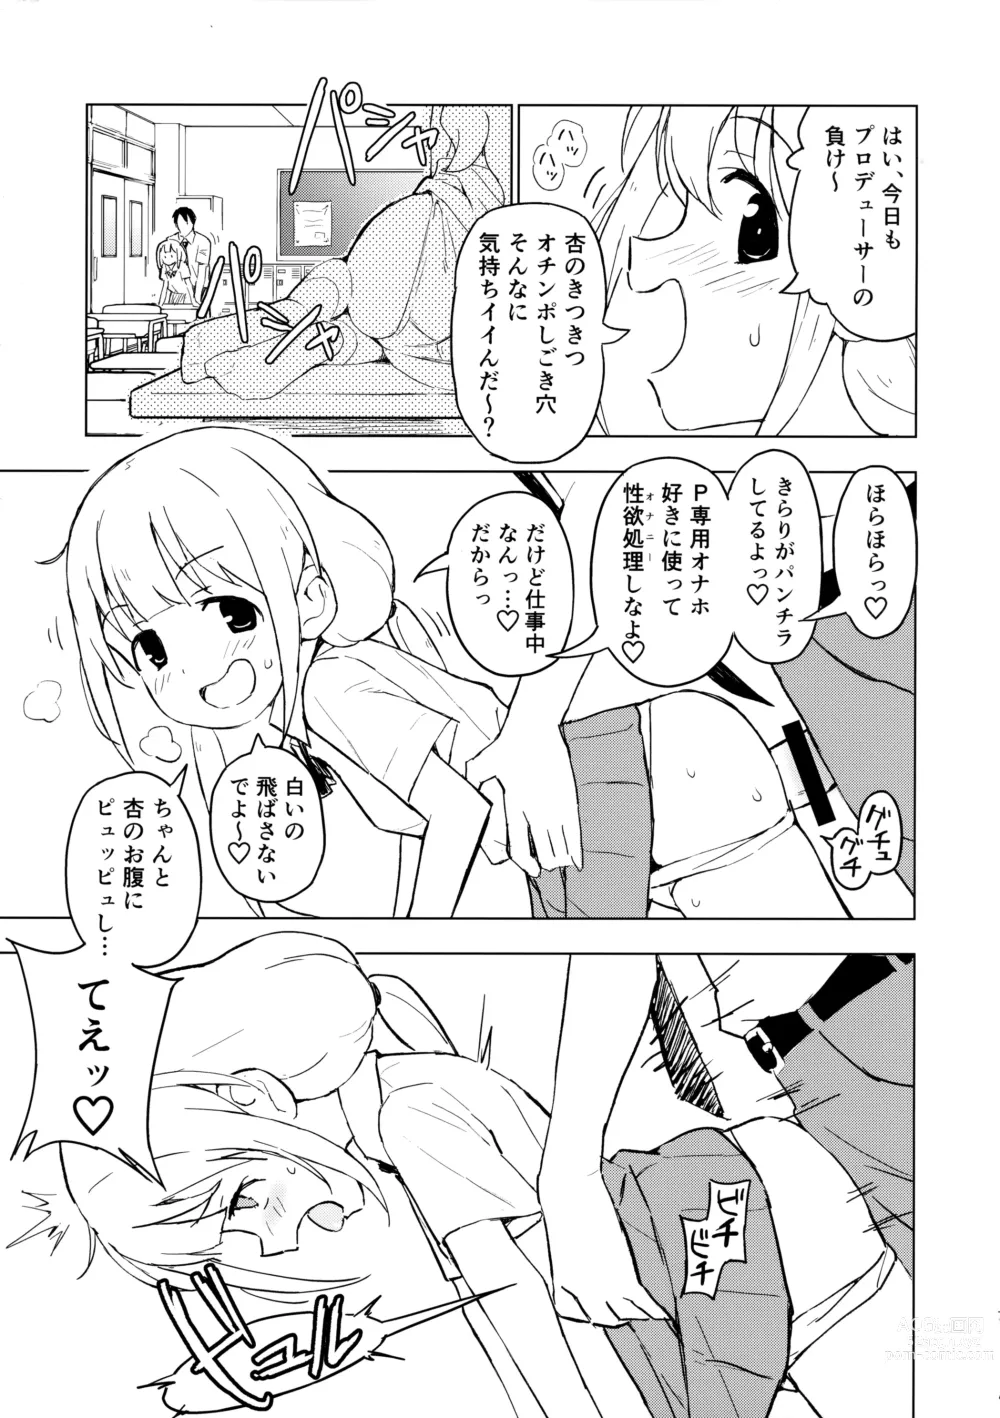 Page 6 of doujinshi AnKira Ura Satsueikai Cosplay Hametori 7-renkin!